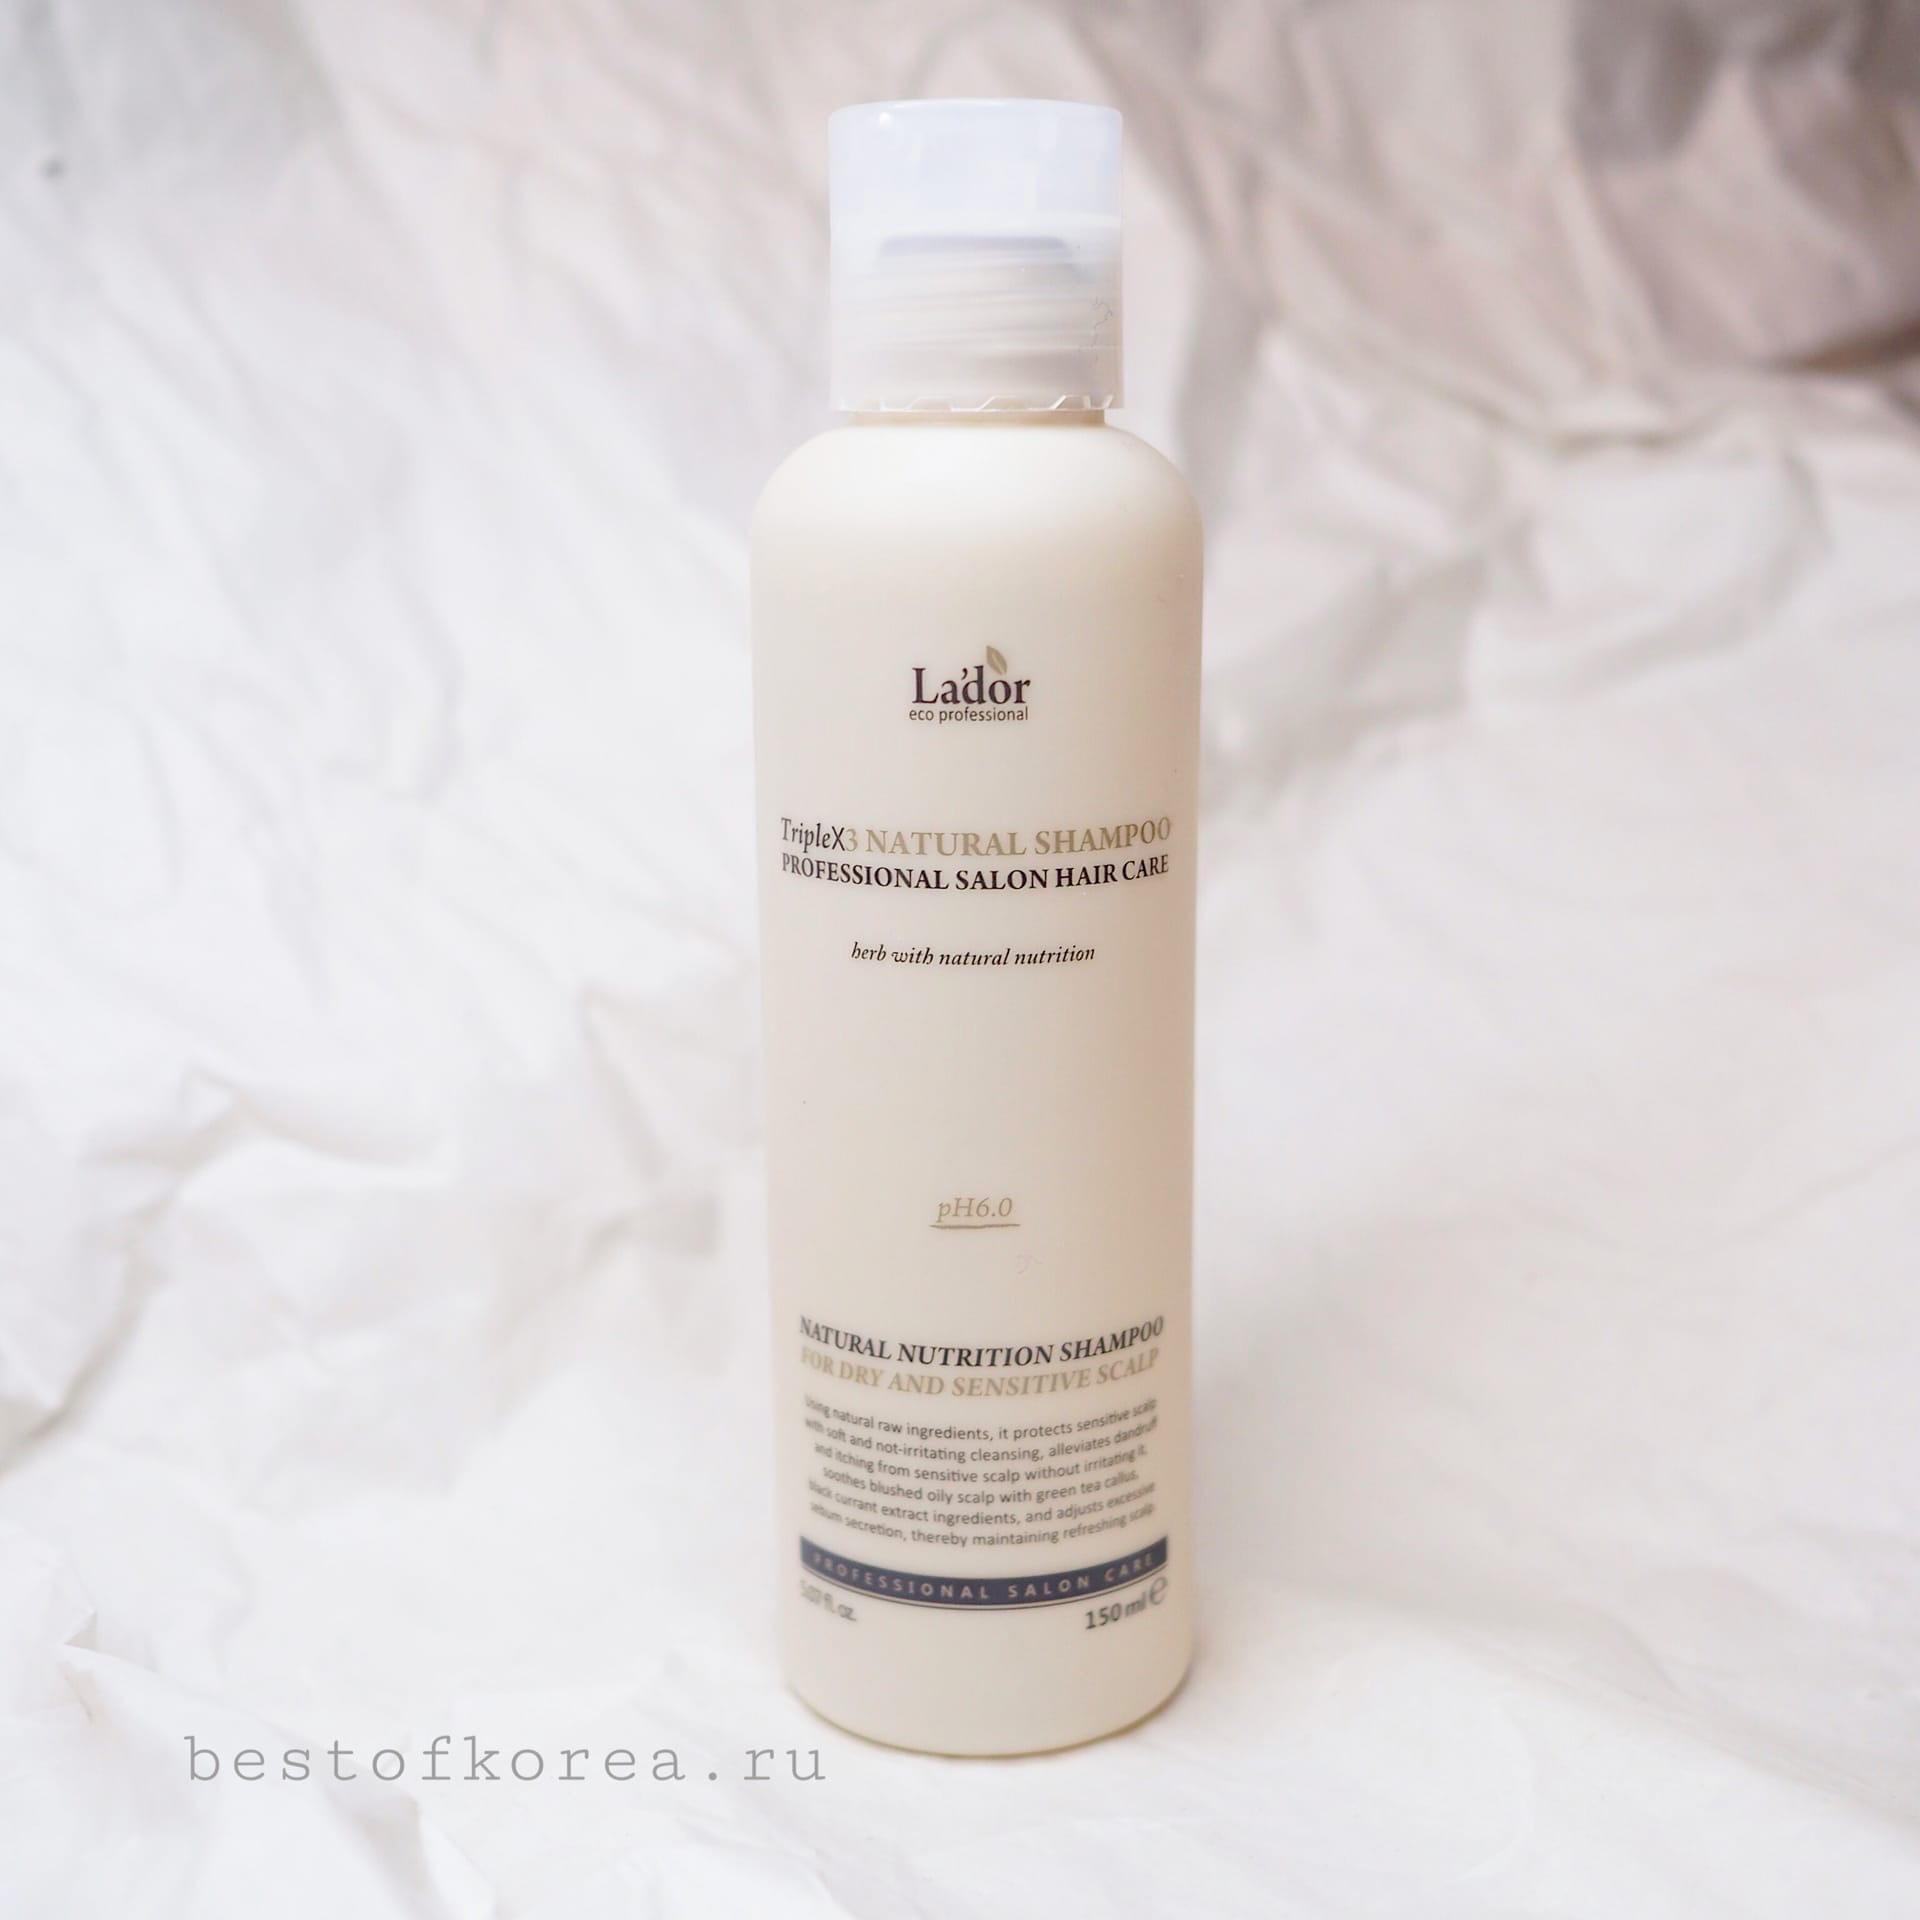 картинка Lador Шампунь против перхоти,освежает,укрепляет волосы РН 6,0 Triplex Natural Shampoo 150мл